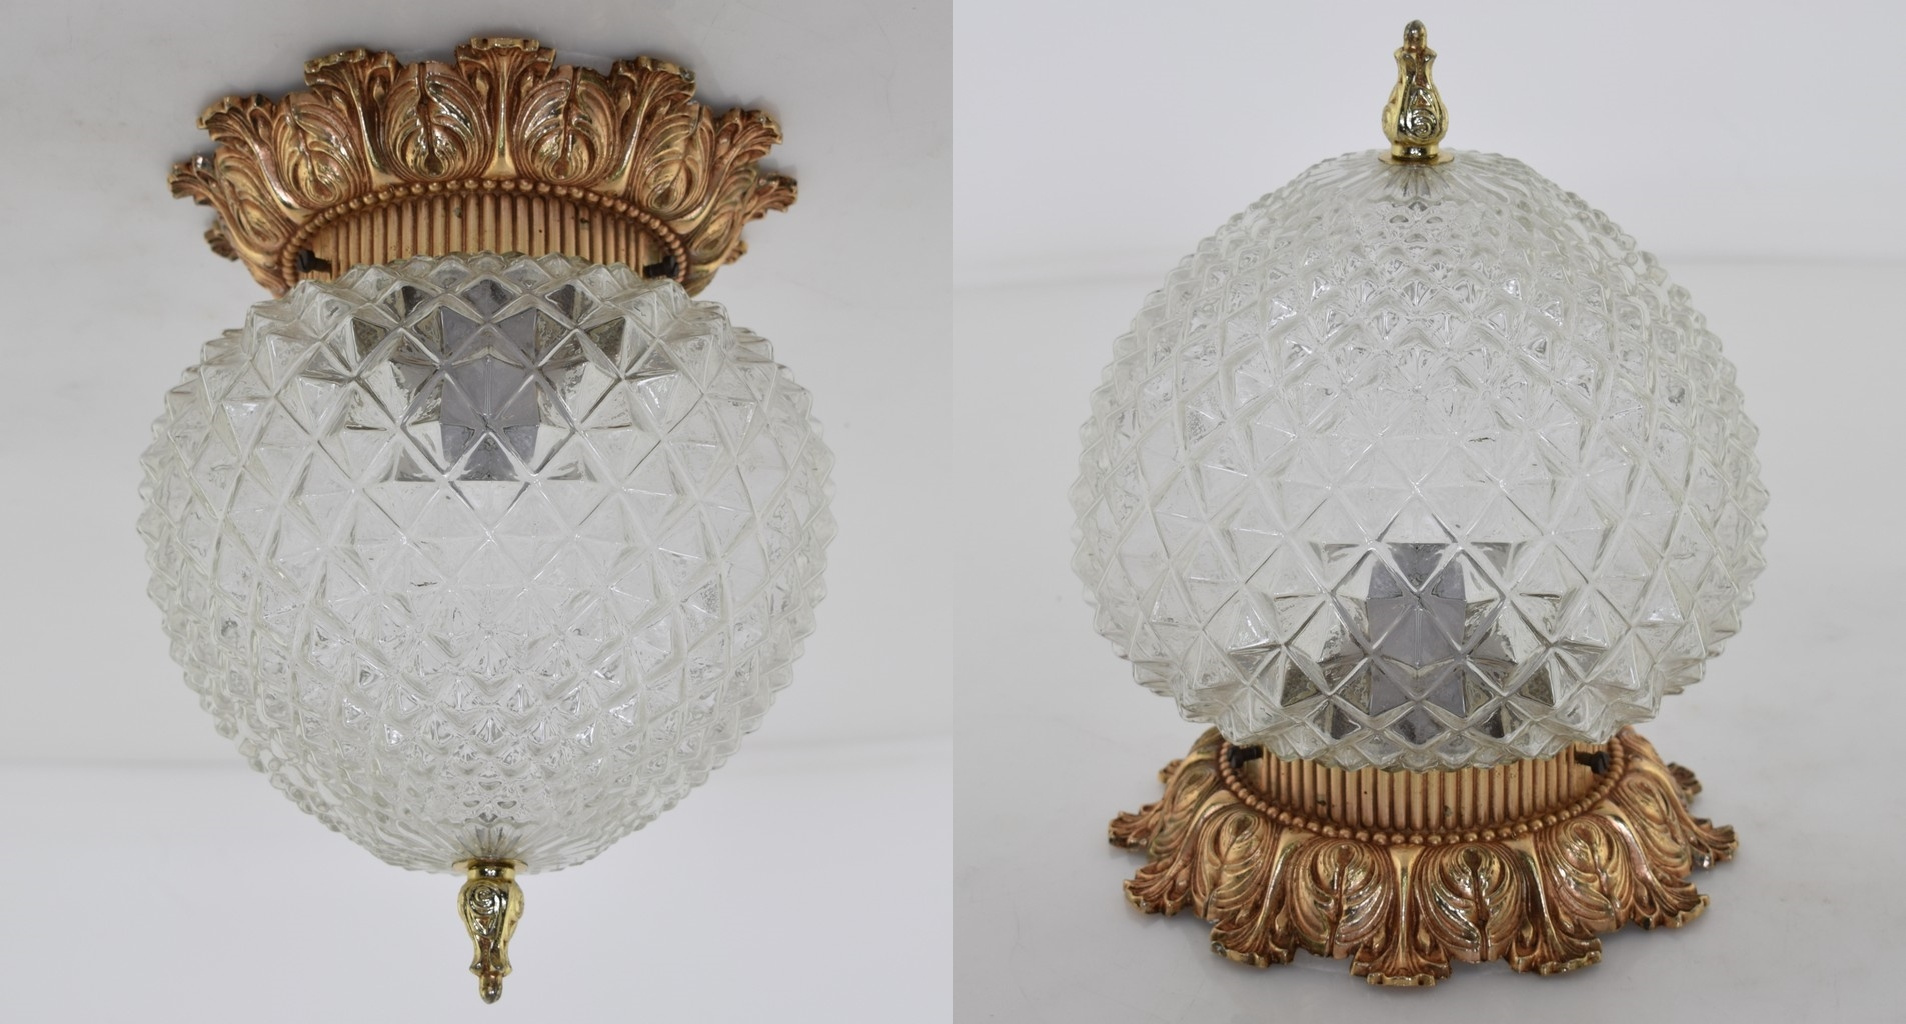 Stare okrągłe lampy sufitowe w stylu vintage - gdzie kupić?